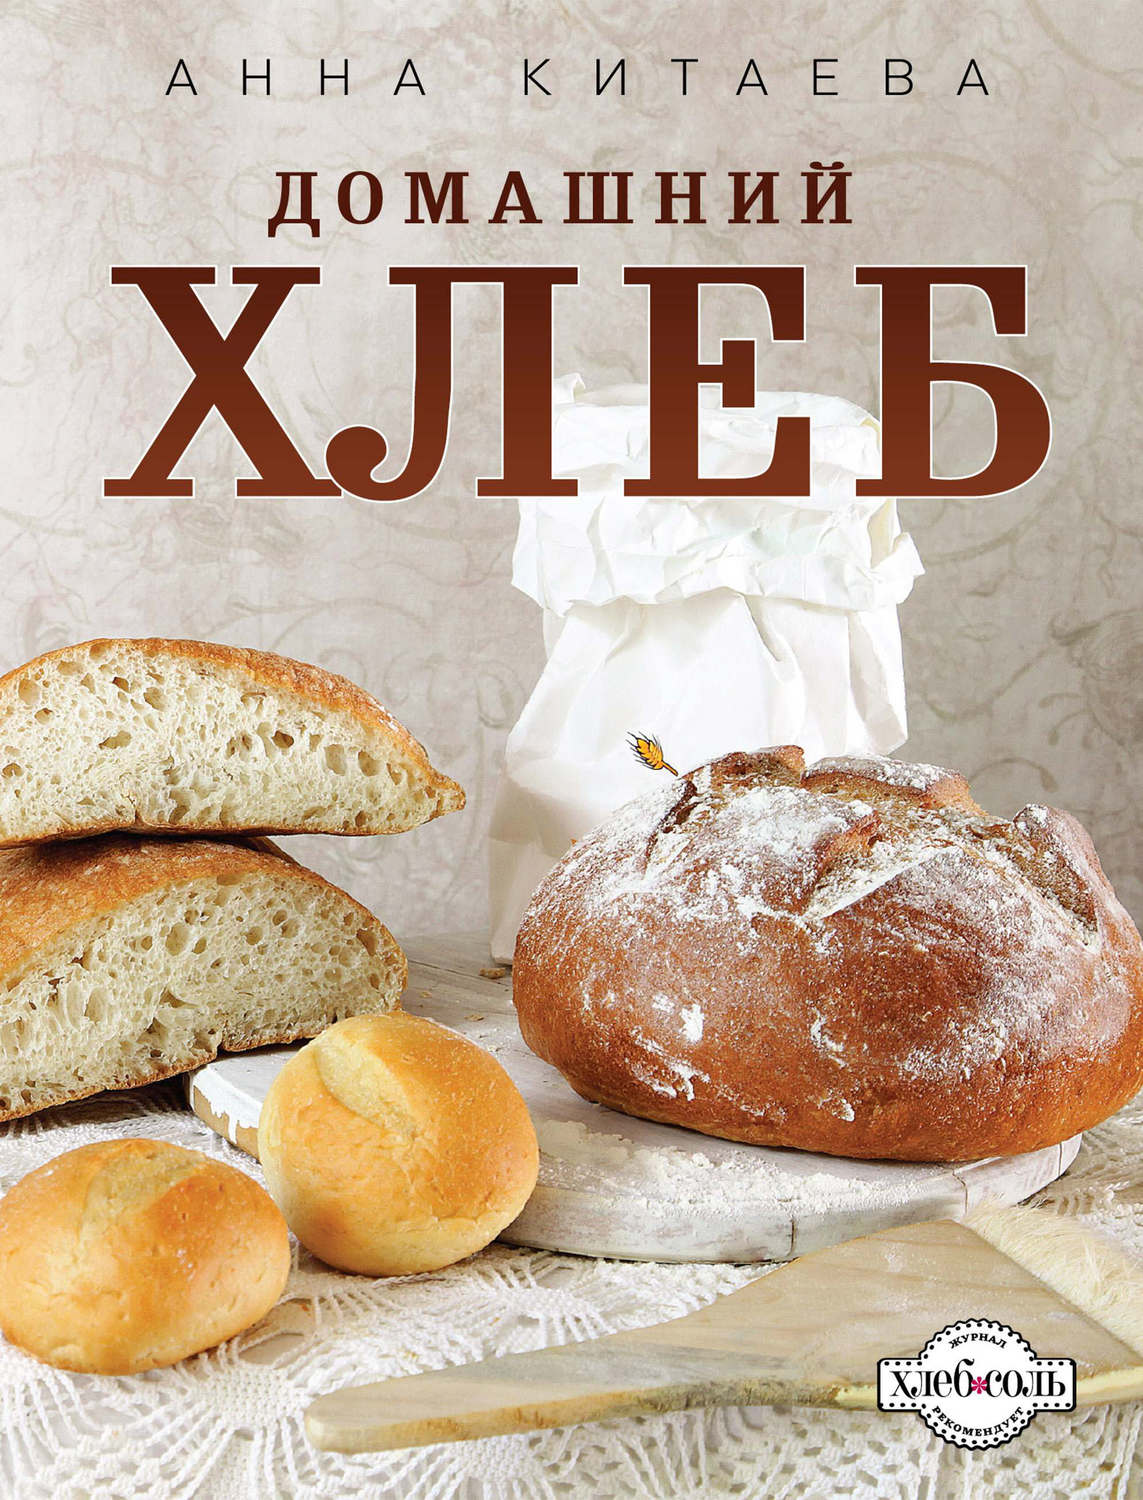 Анна китаева домашний хлеб скачать книгу бесплатно